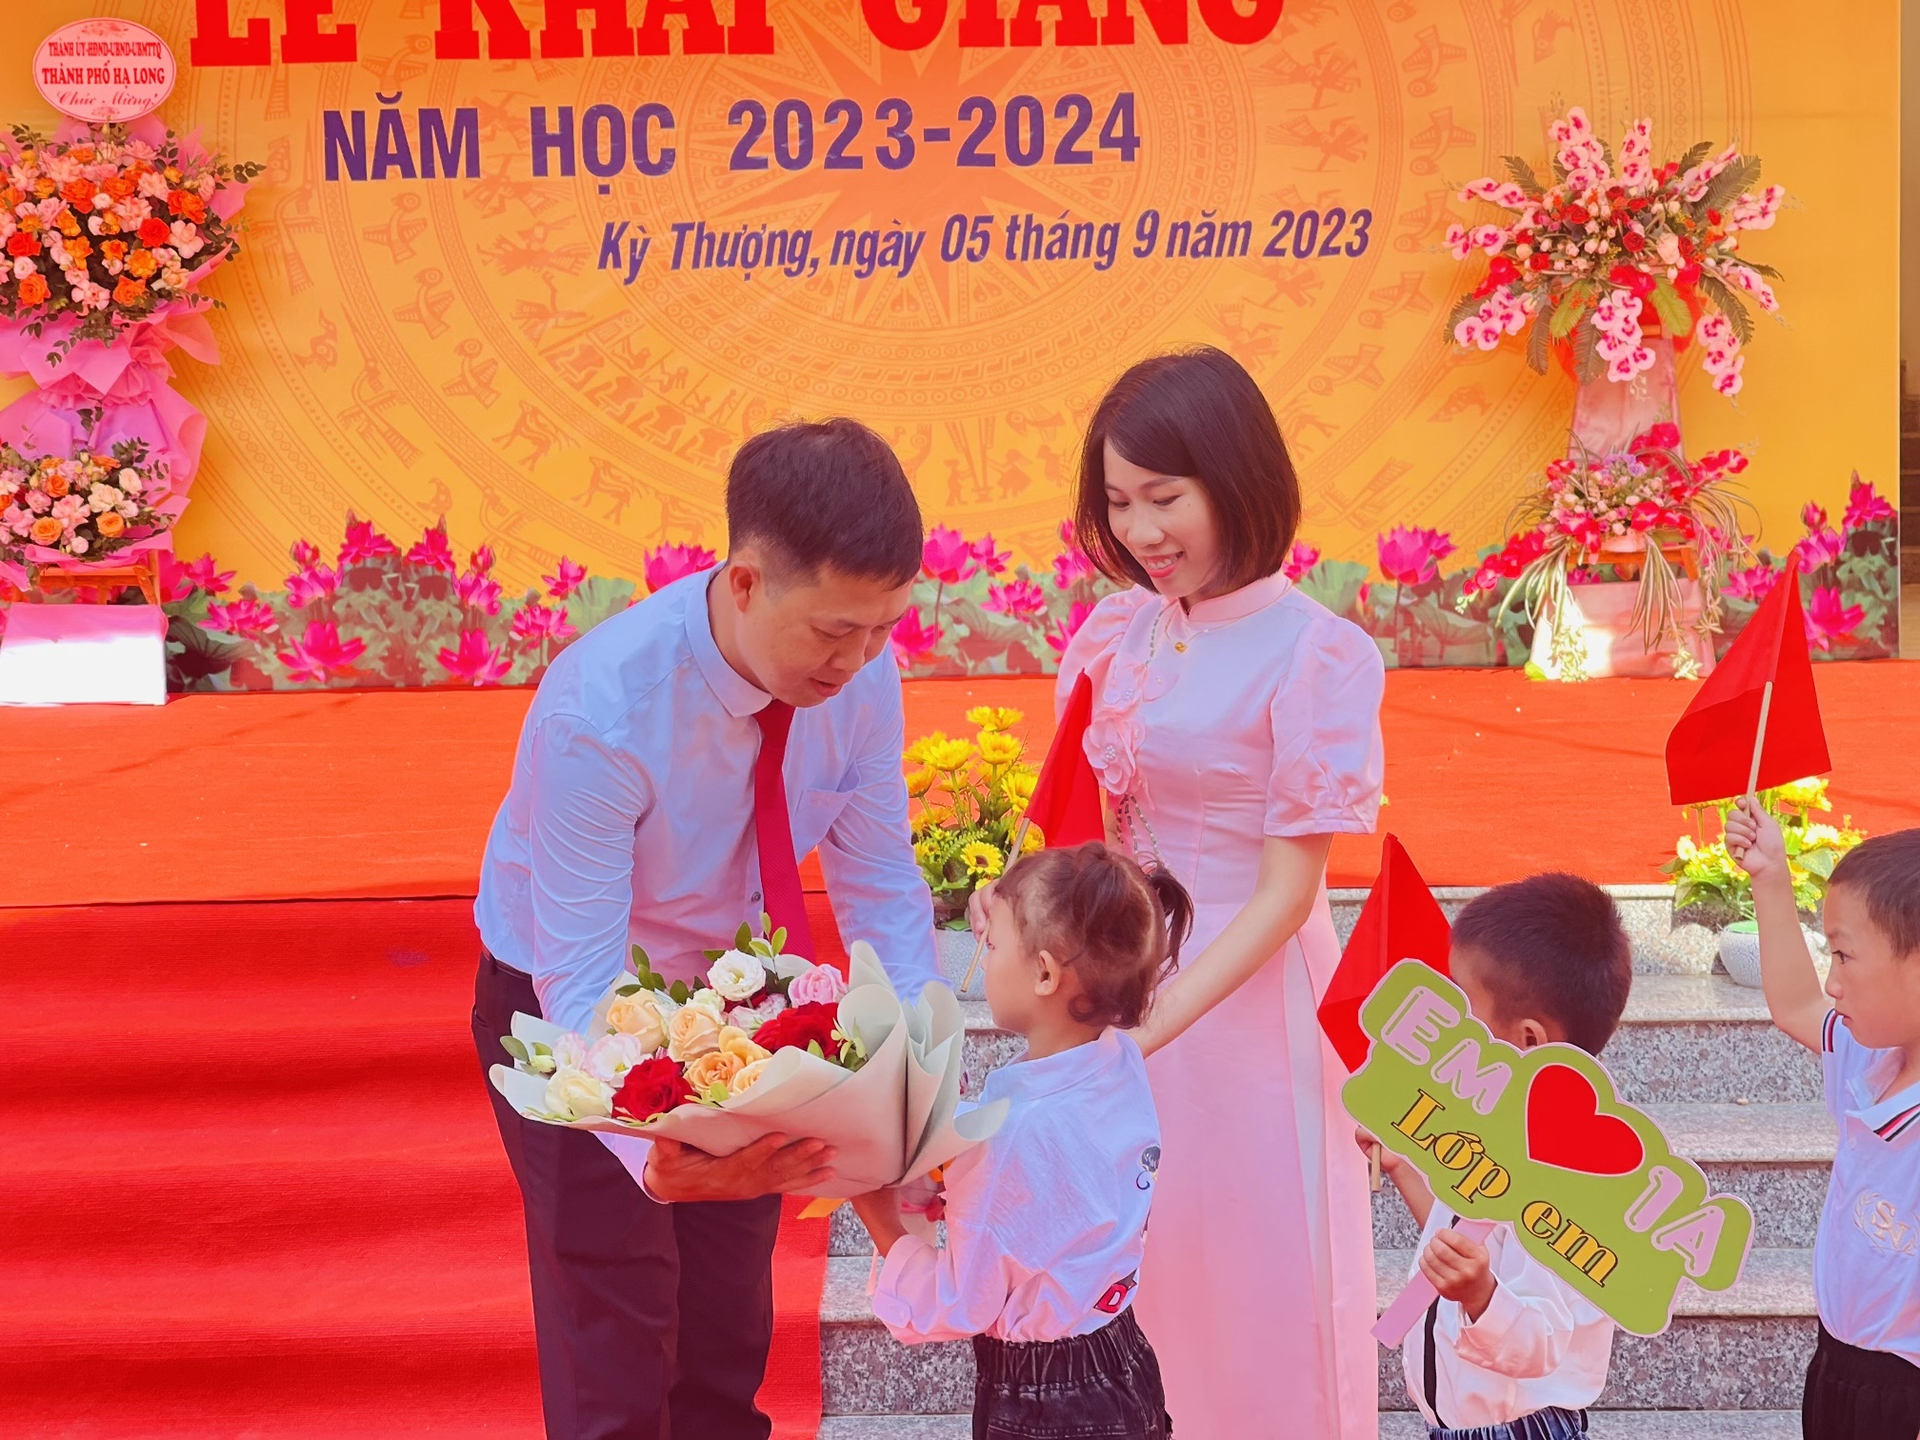 Thầy giáo Nguyễn Đức Hùng, Hiệu trưởng trường TH&THCS Kỳ Thượng, tặng hoa cho các em học sinh trong ngày khai giảng. Ảnh: Nguyễn Thành.